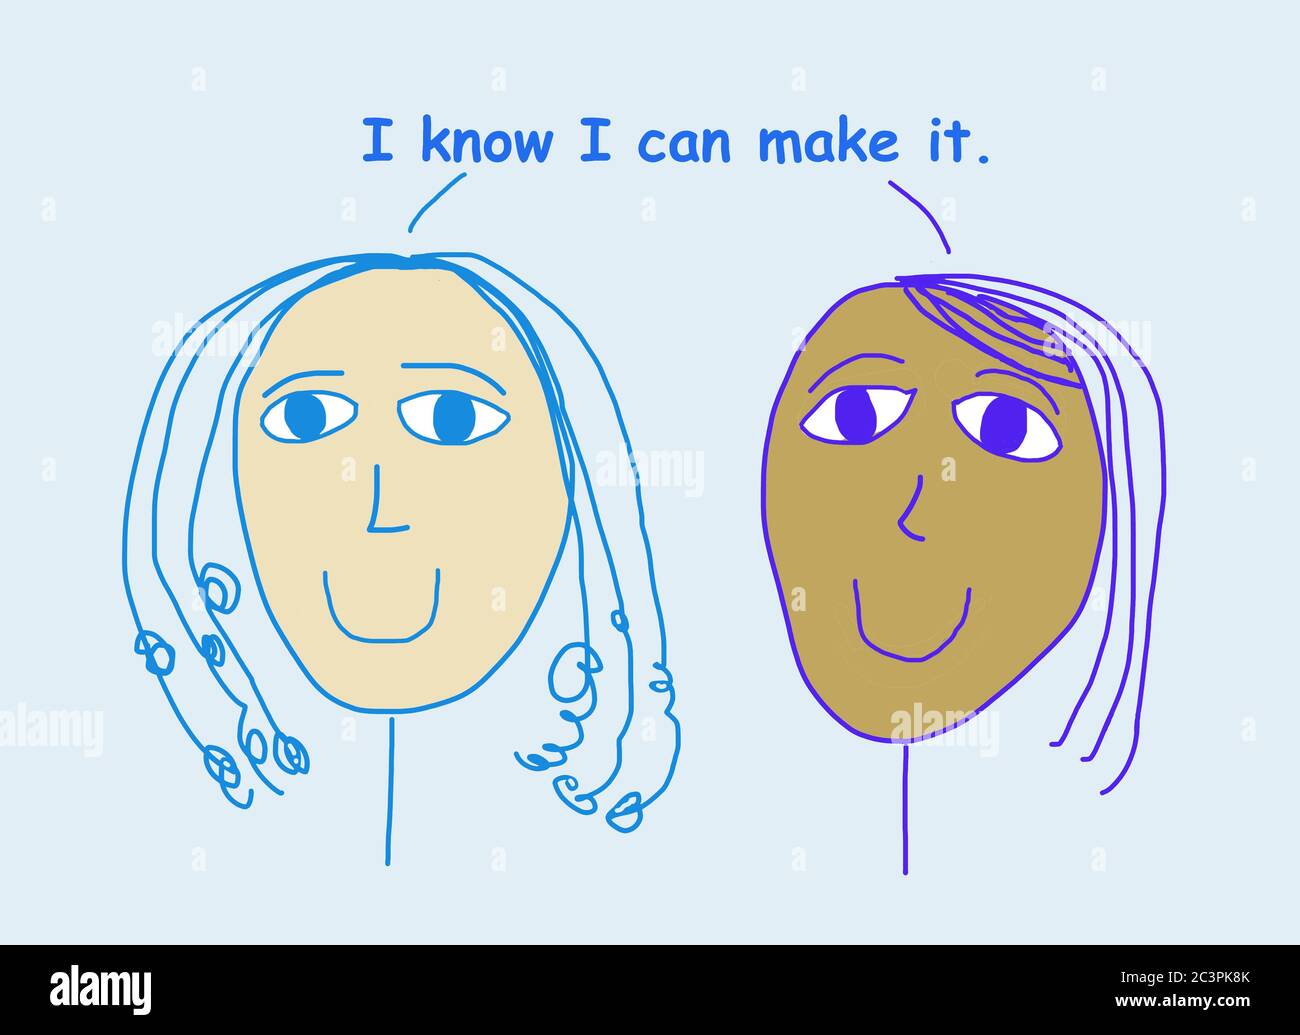 Farb-Cartoon von zwei lächelnden, schönen, ethnisch verschiedenen Frauen besagt, dass ich weiß, ich kann es machen. Stockfoto